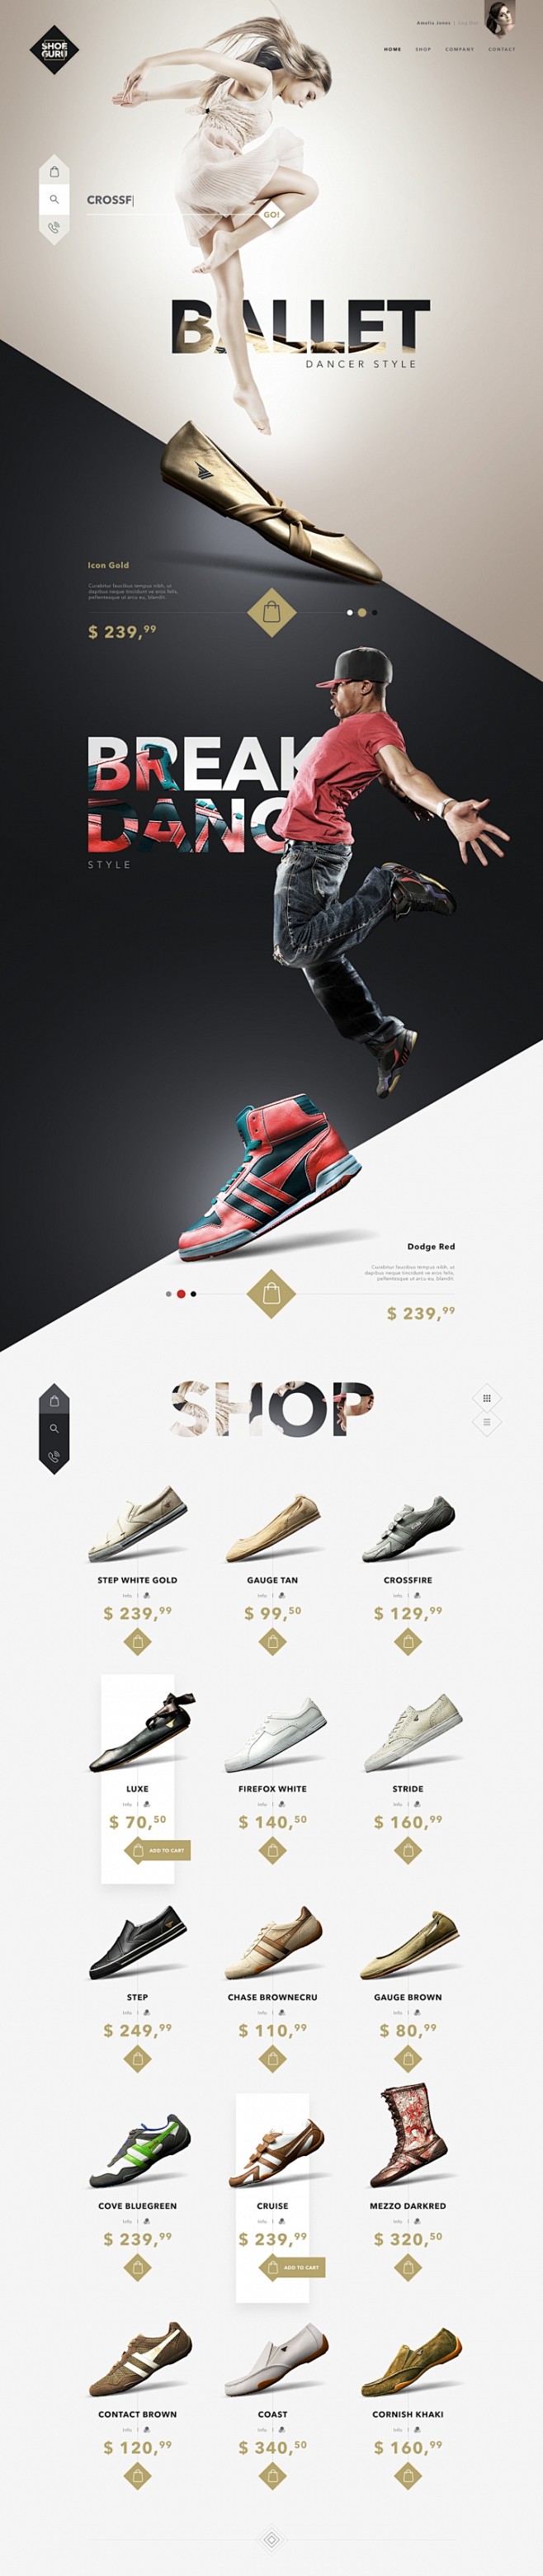 SHOE GURU 鞋品牌网站设计 设计...